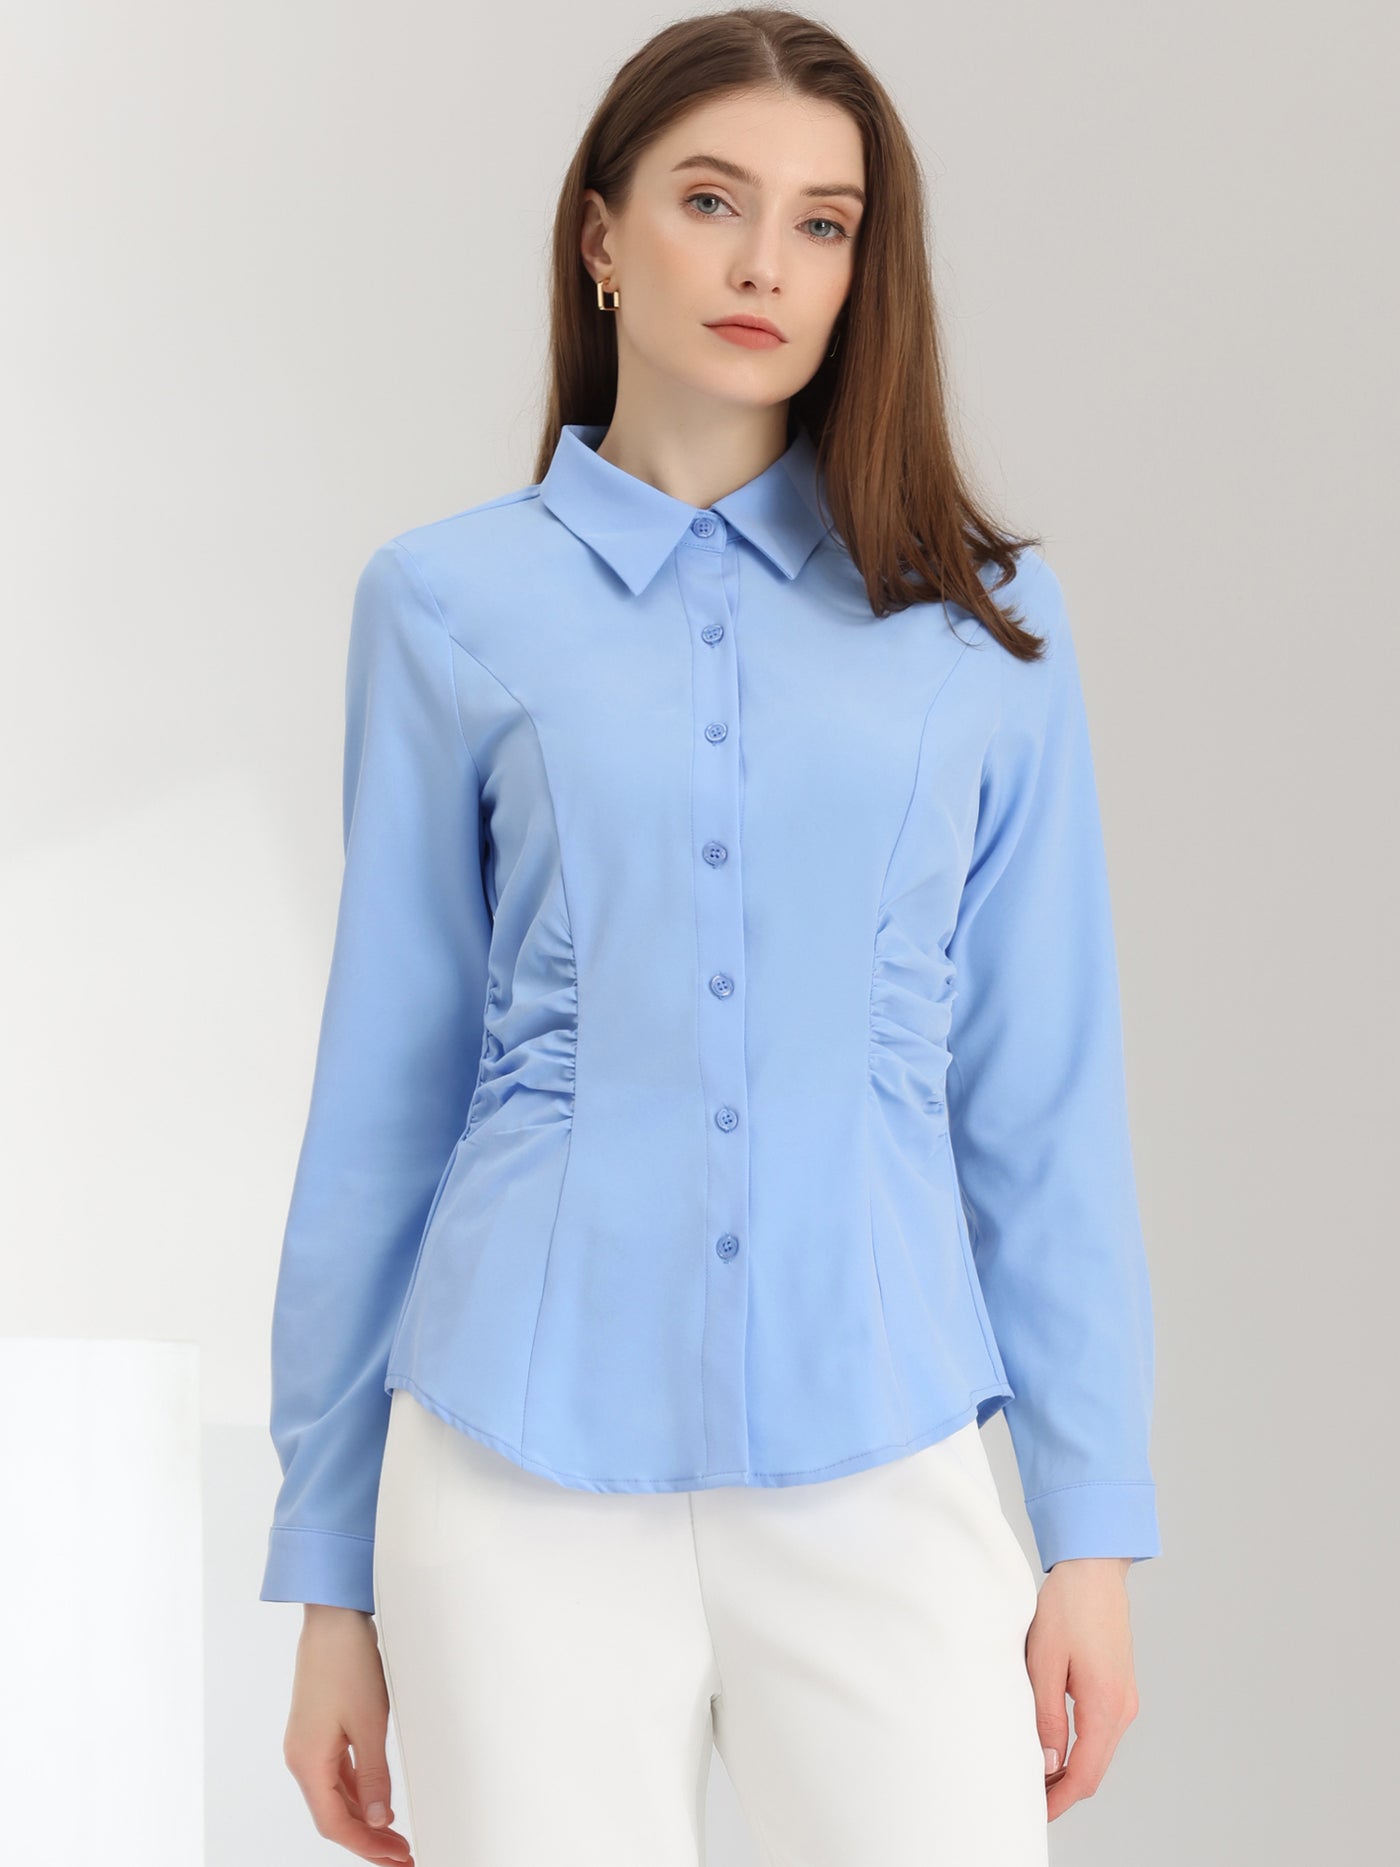 Allegra K Long Sleeve Office Shirt Button Down Work Ruched Waist Tops